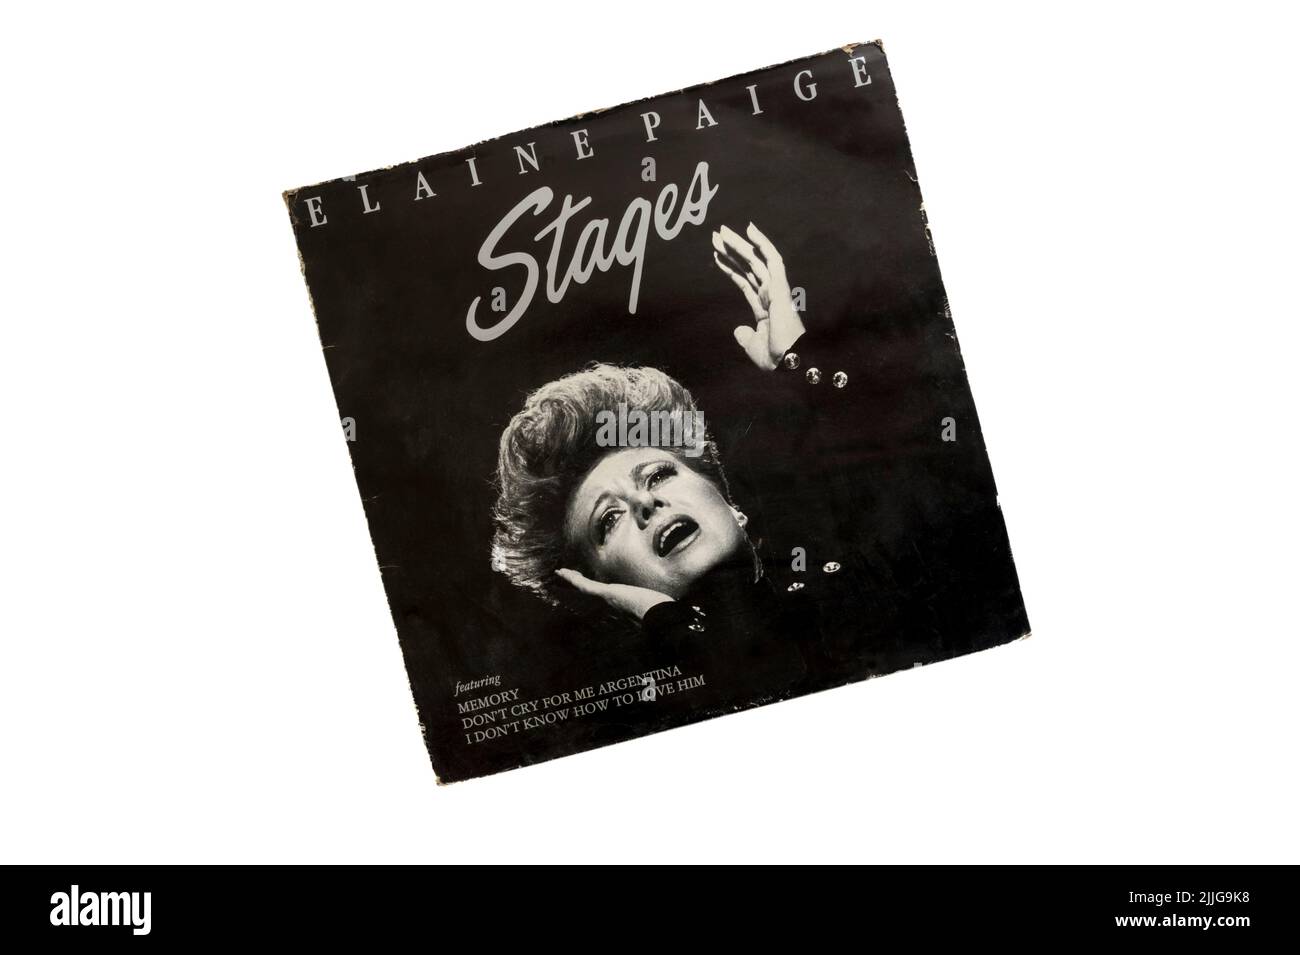 Stages de Elaine Paige fue lanzado en 1983. Foto de stock